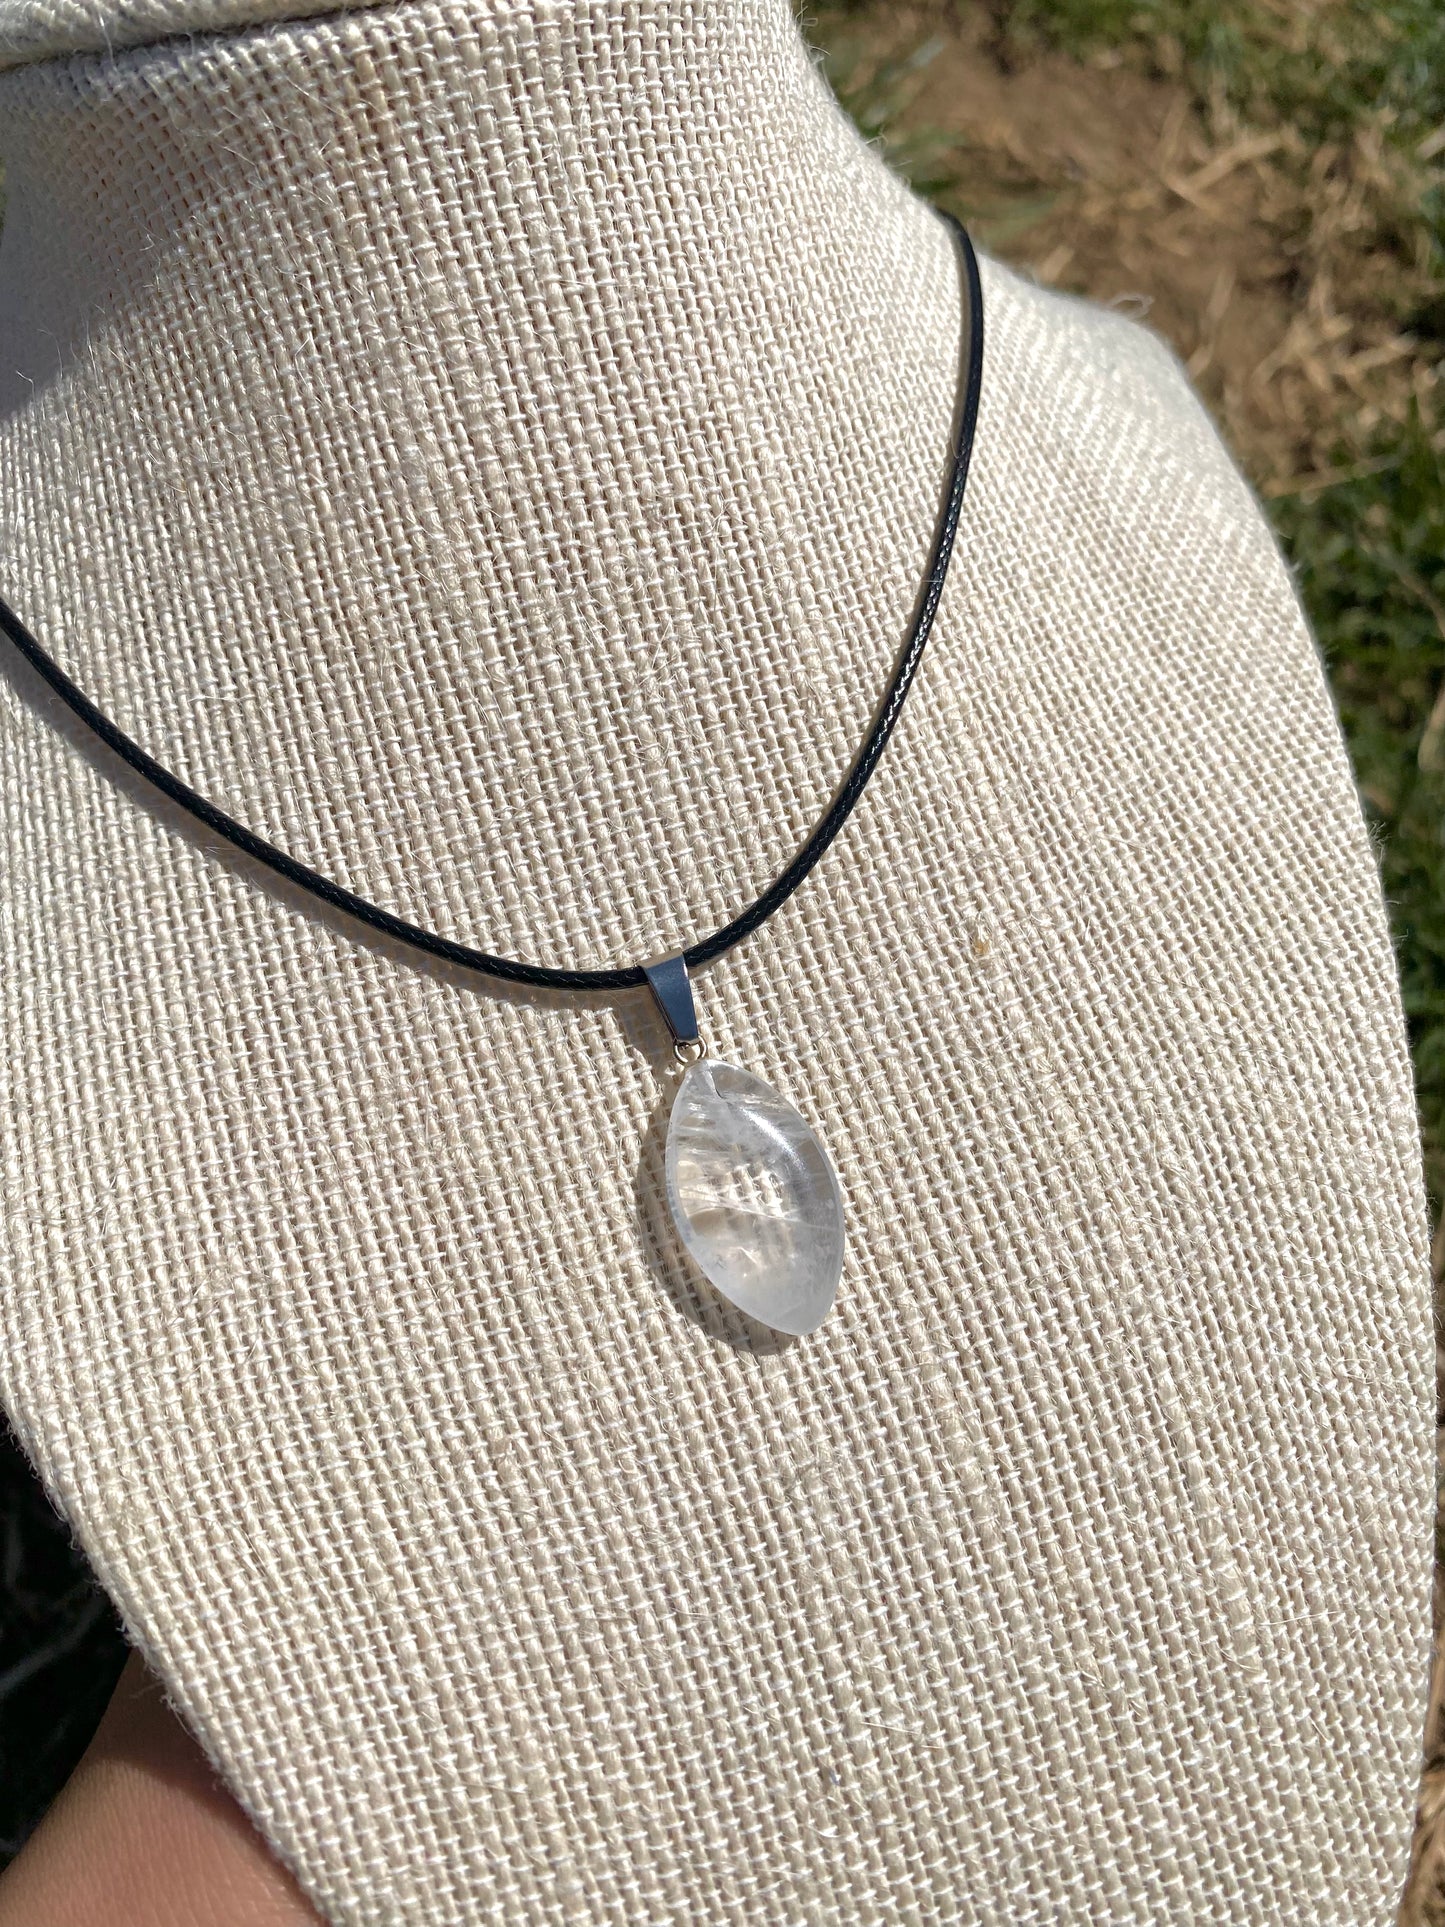 Clear quartz necklace